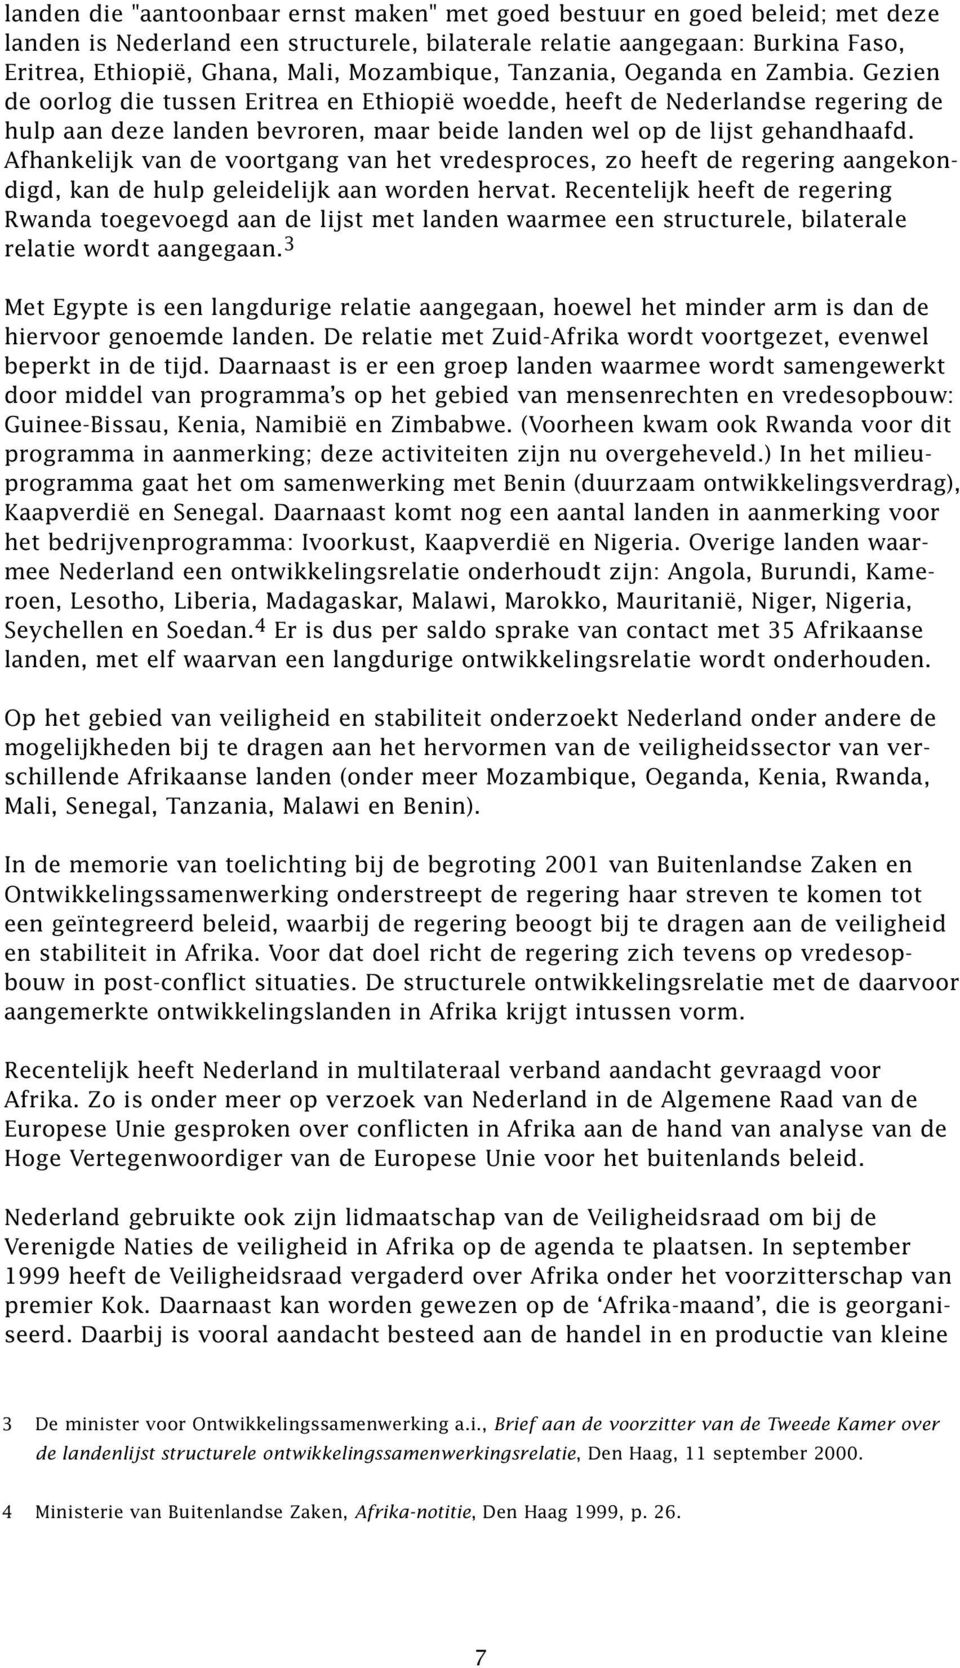 Gezien de oorlog die tussen Eritrea en Ethiopië woedde, heeft de Nederlandse regering de hulp aan deze landen bevroren, maar beide landen wel op de lijst gehandhaafd.